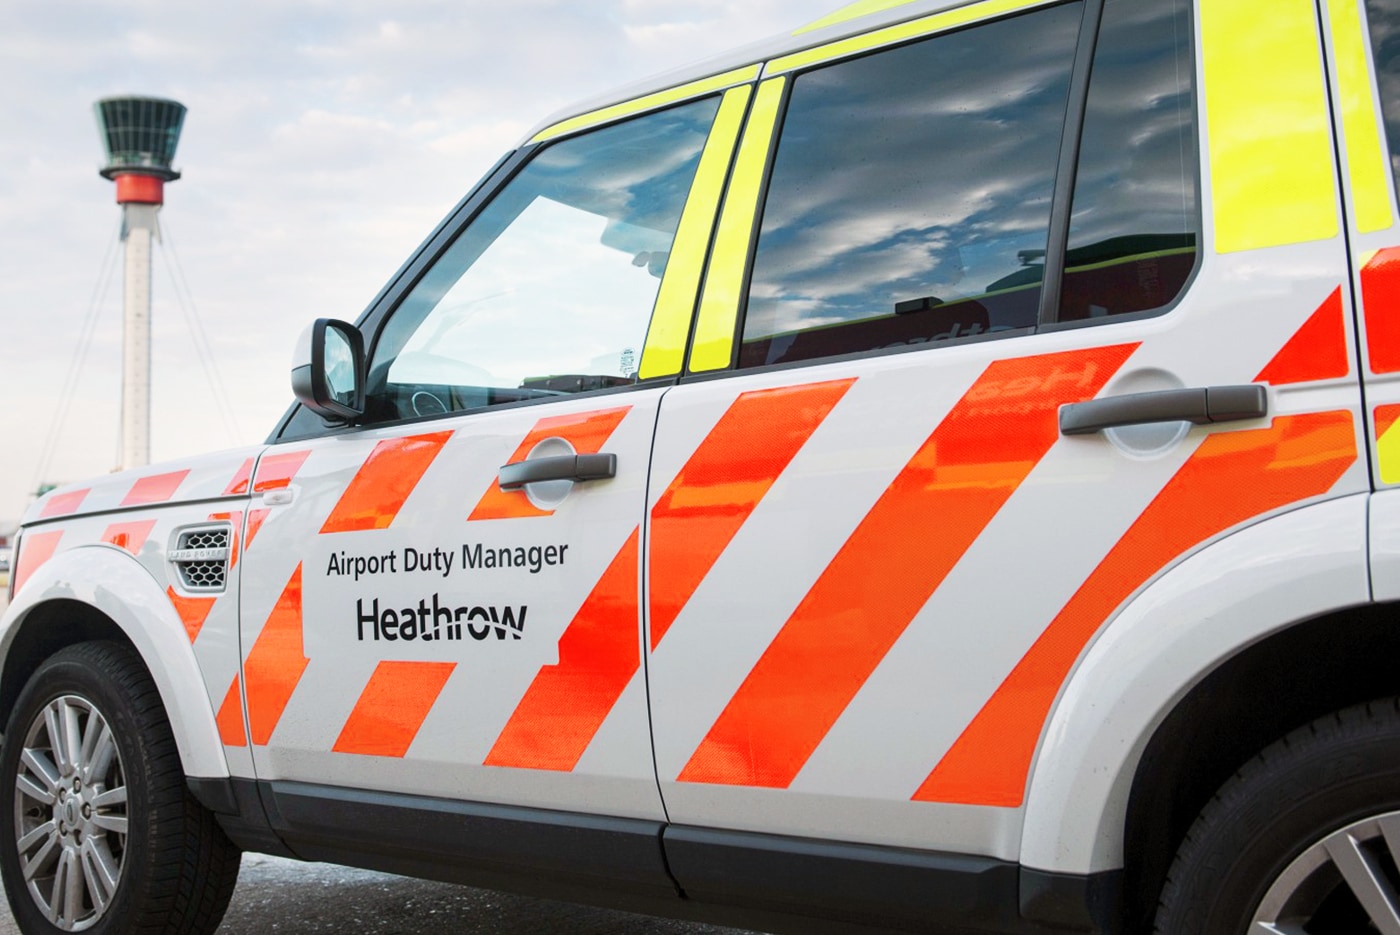 Heathrow’s vehicle livery